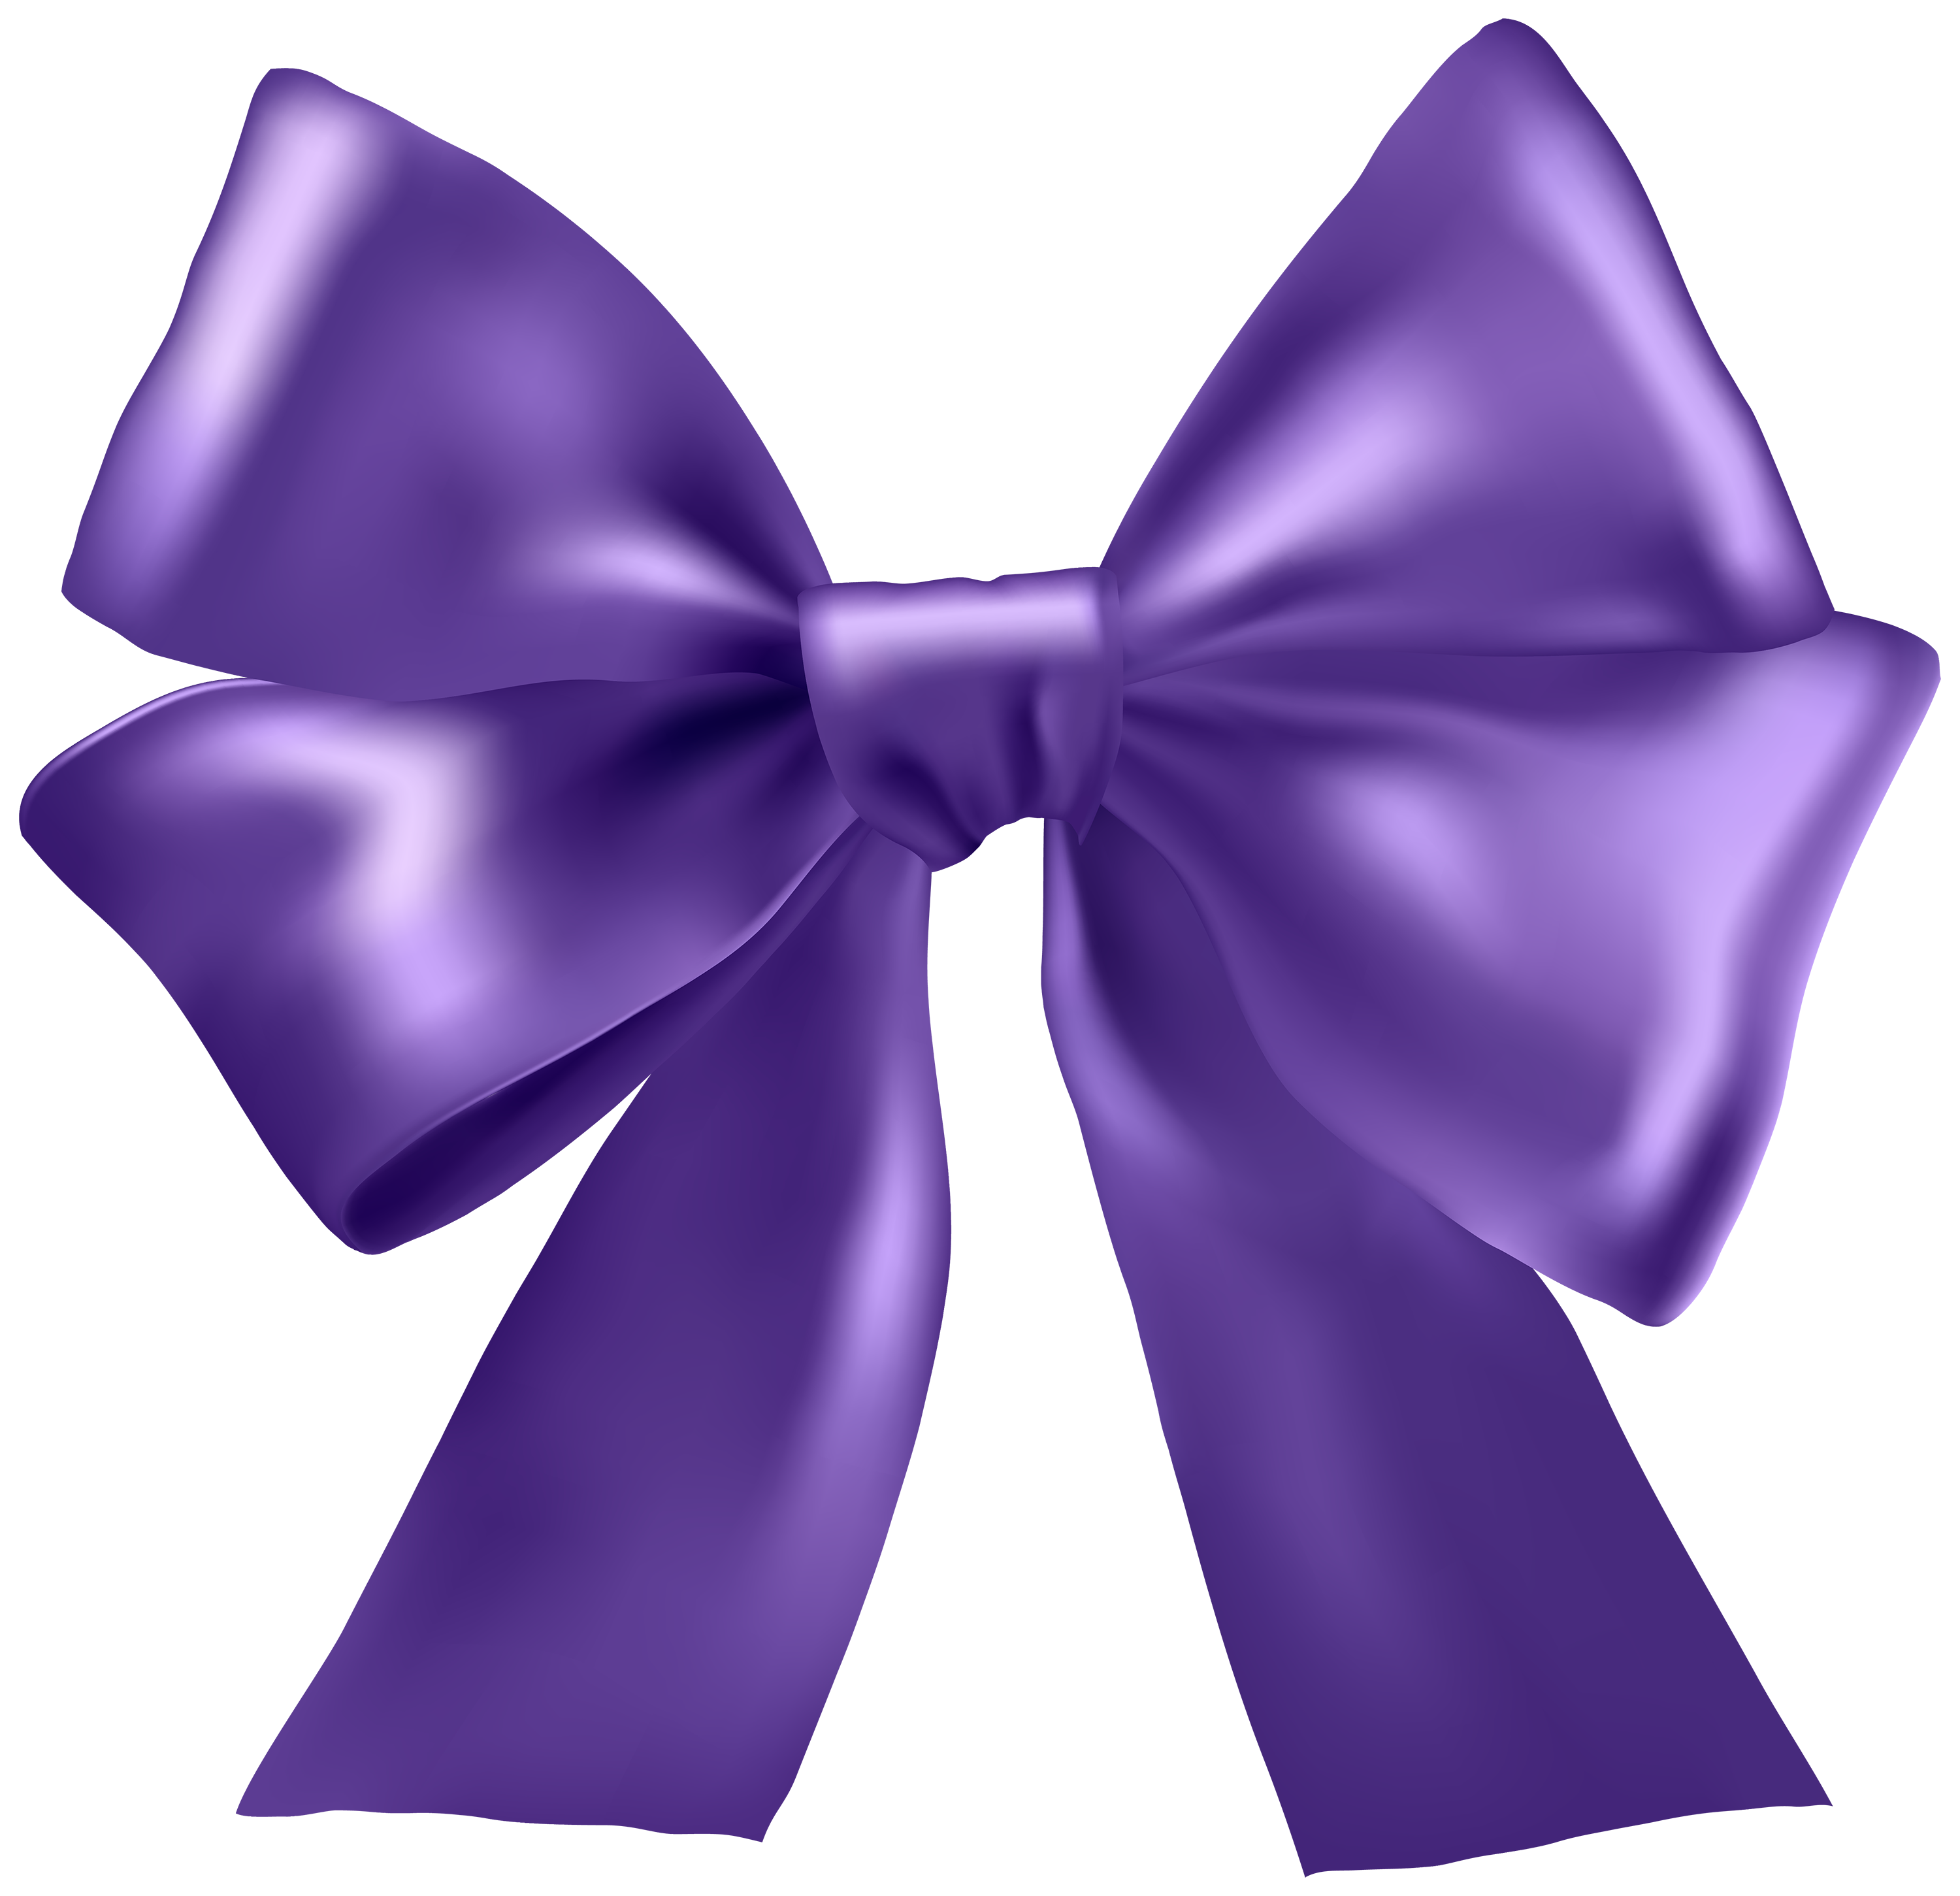 Purple Ribbon PNG Clipart - Best WEB Clipart